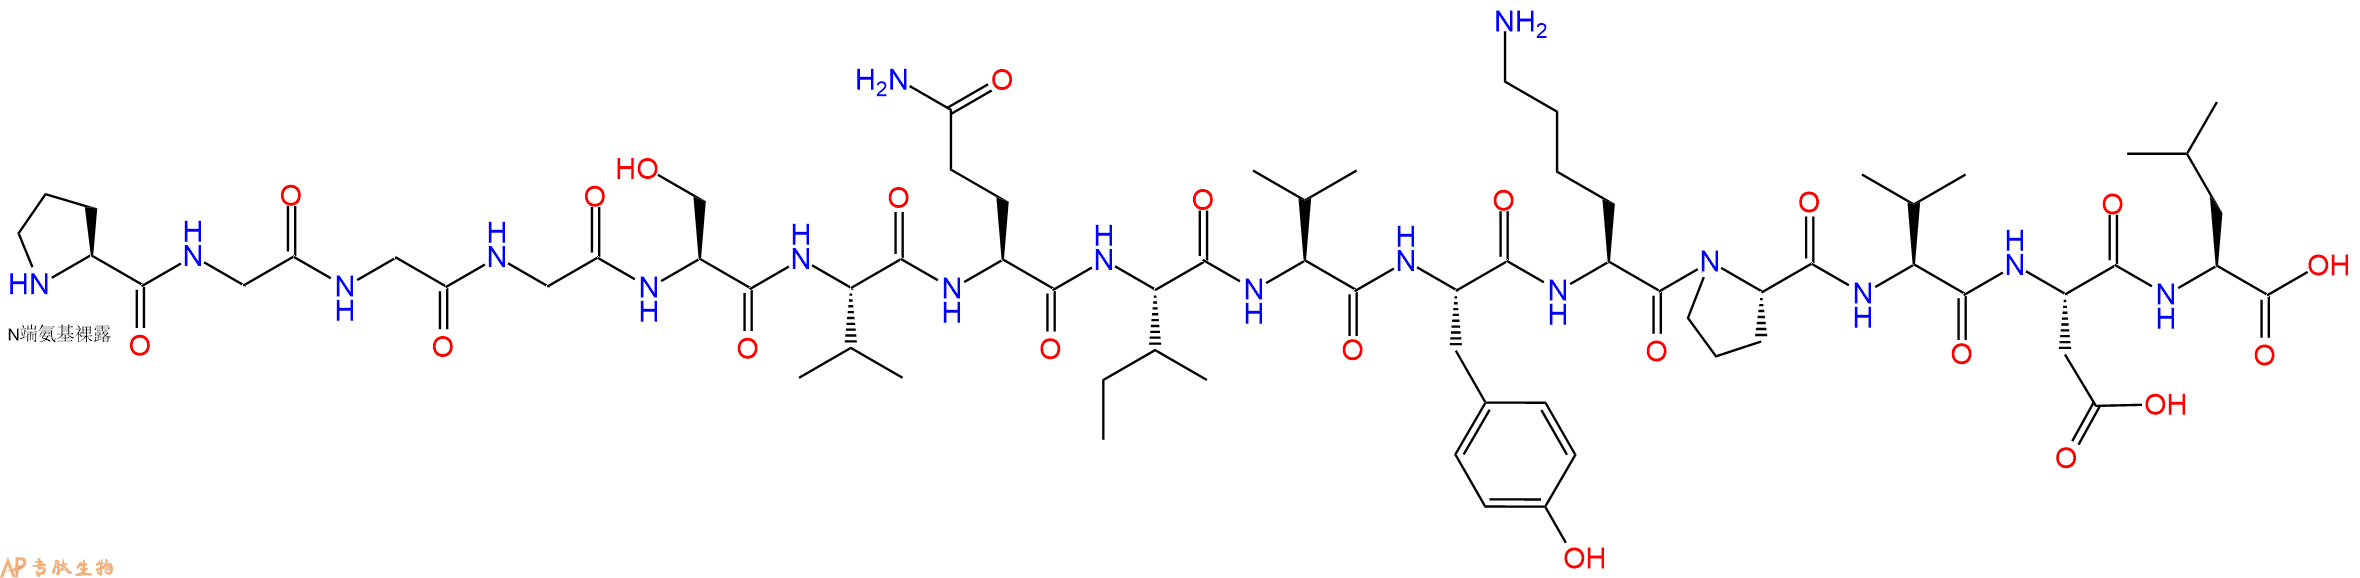 专肽生物产品Tau肽 Tau Peptide (301-315)330456-48-9